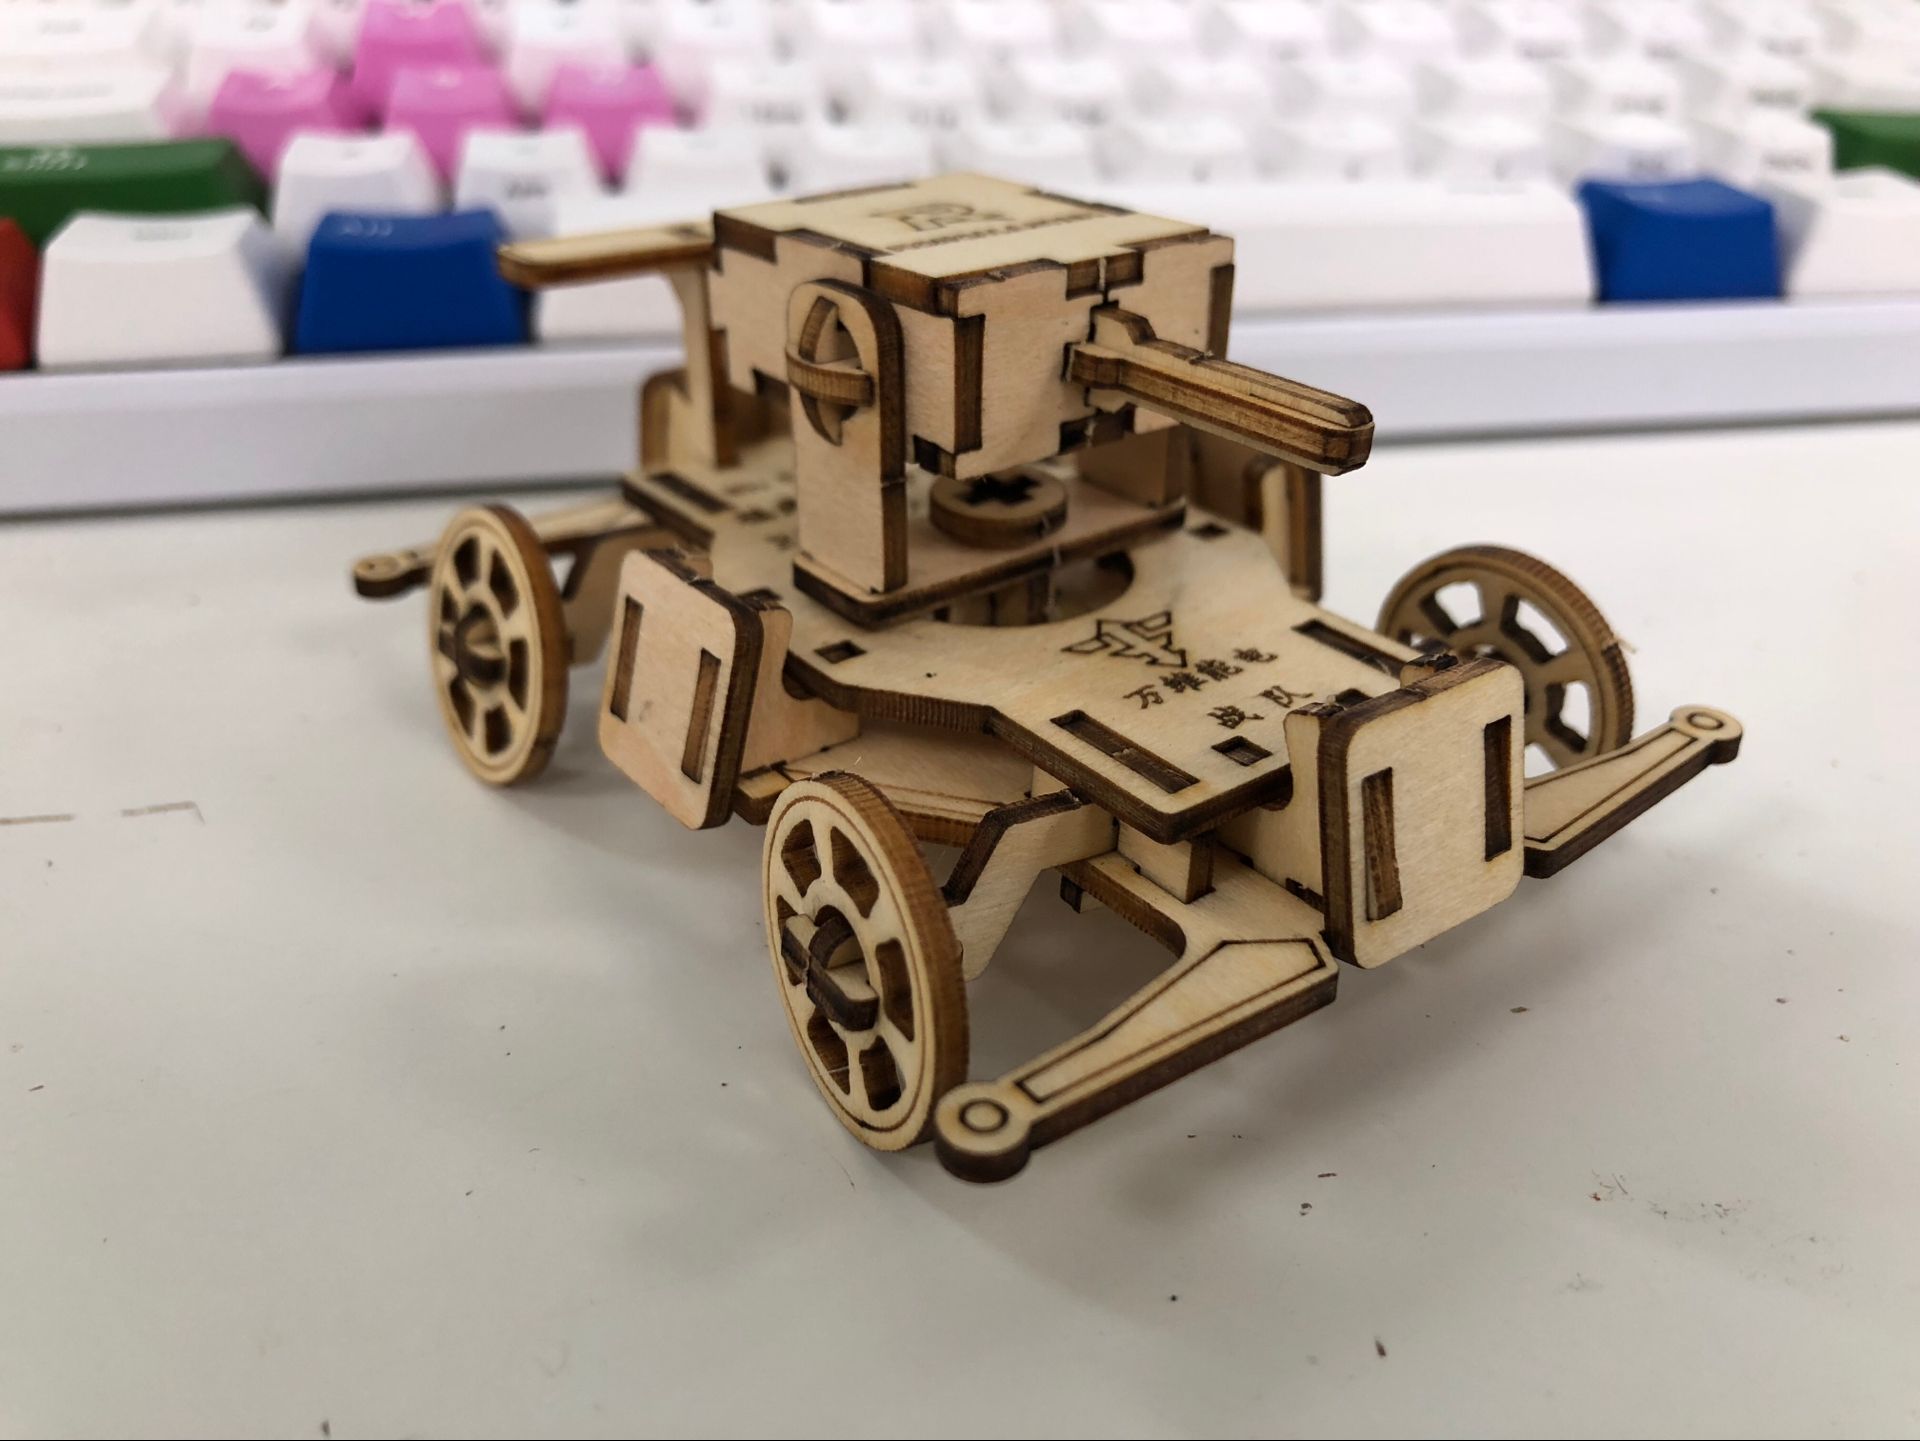 福建工程学院步兵机器人拼装模型图纸 开源CAD图纸